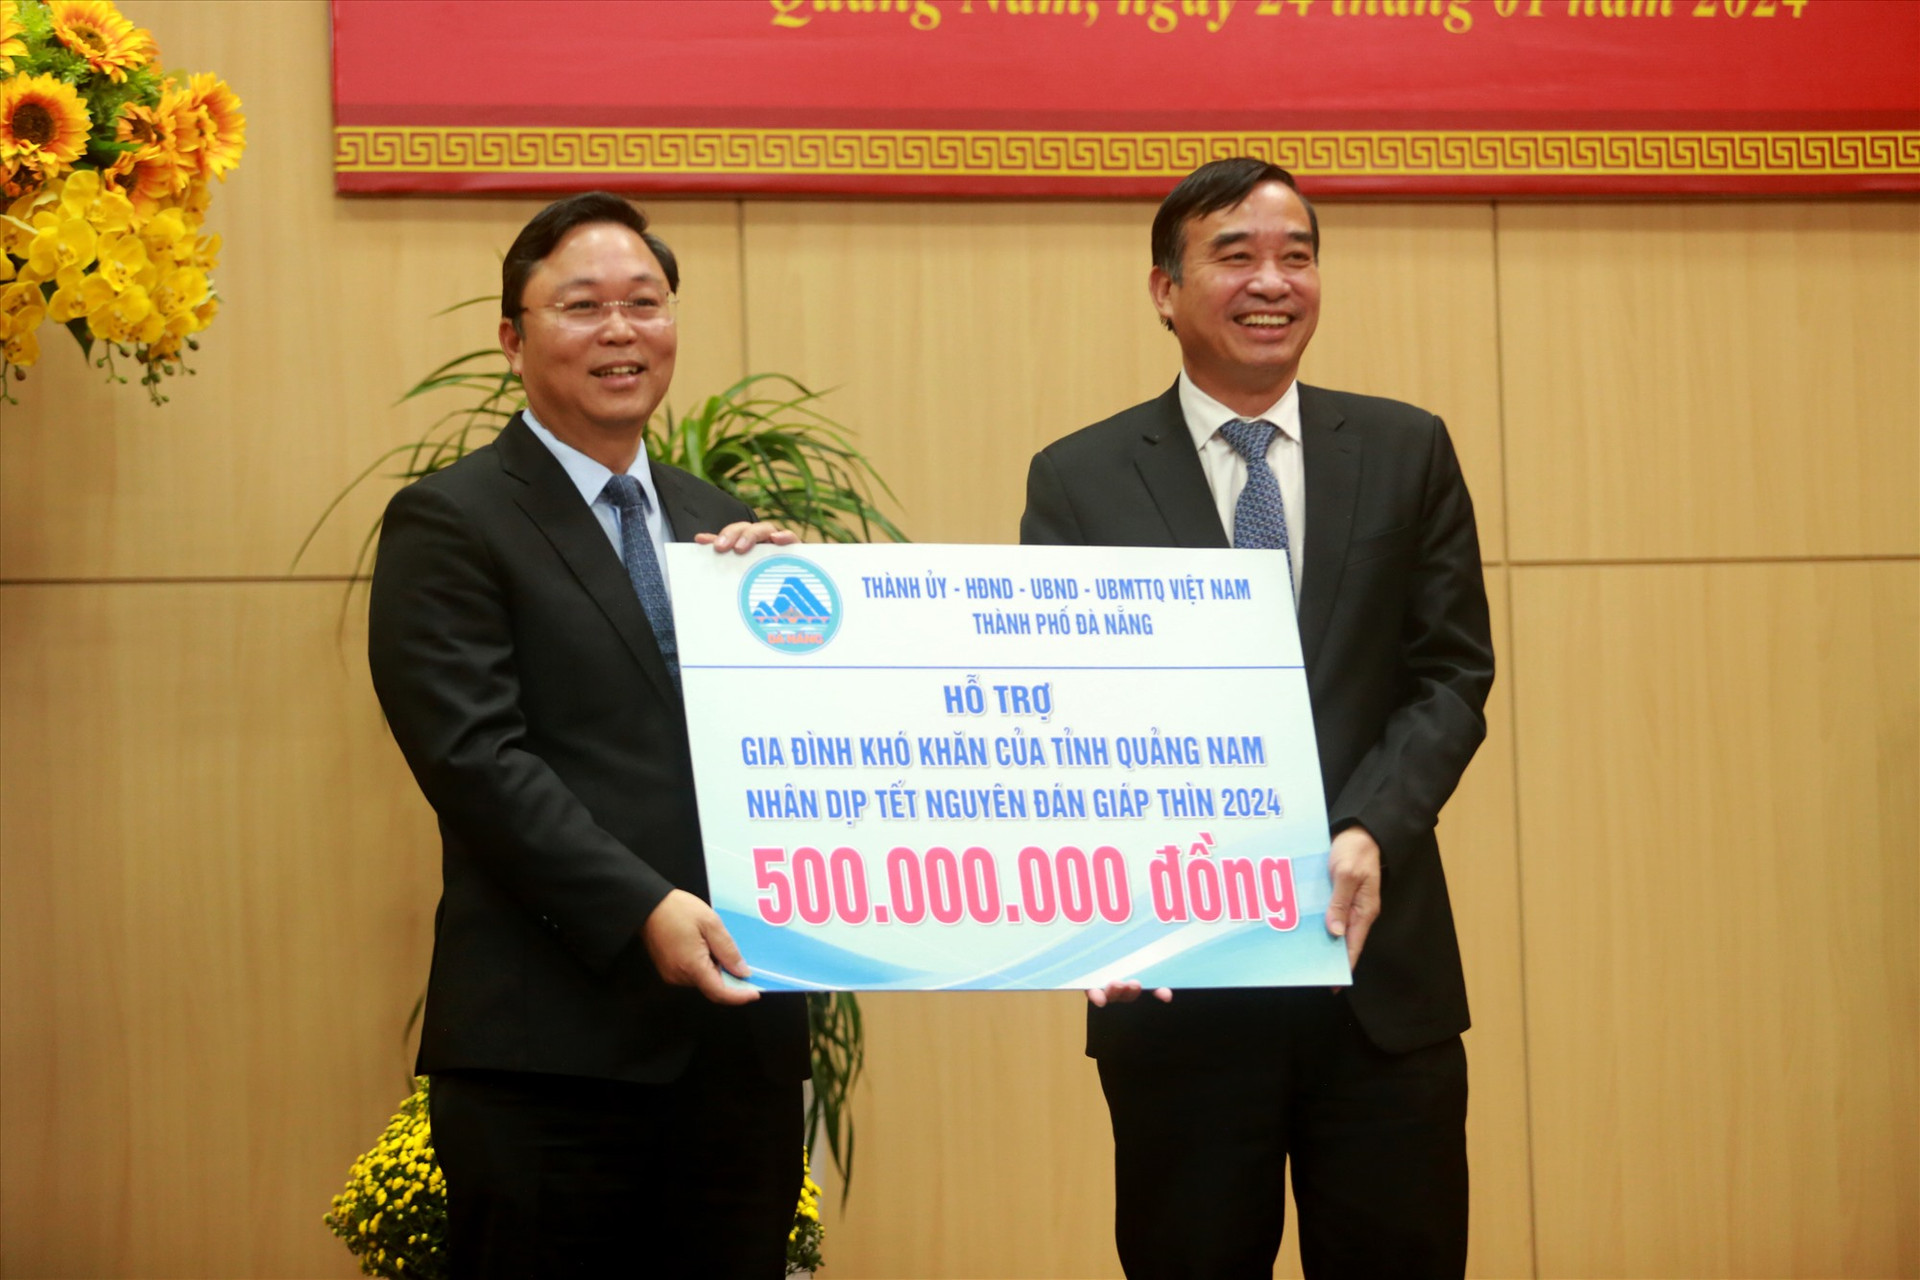 Lãnh đạo TP.Đà Nẵng cũng đã trao tặng hỗ trợ 500 triệu đồng cho các gia đình khó khăn của tỉnh Quảng Nam dịp Tết Nguyên đán. Ảnh: T.C